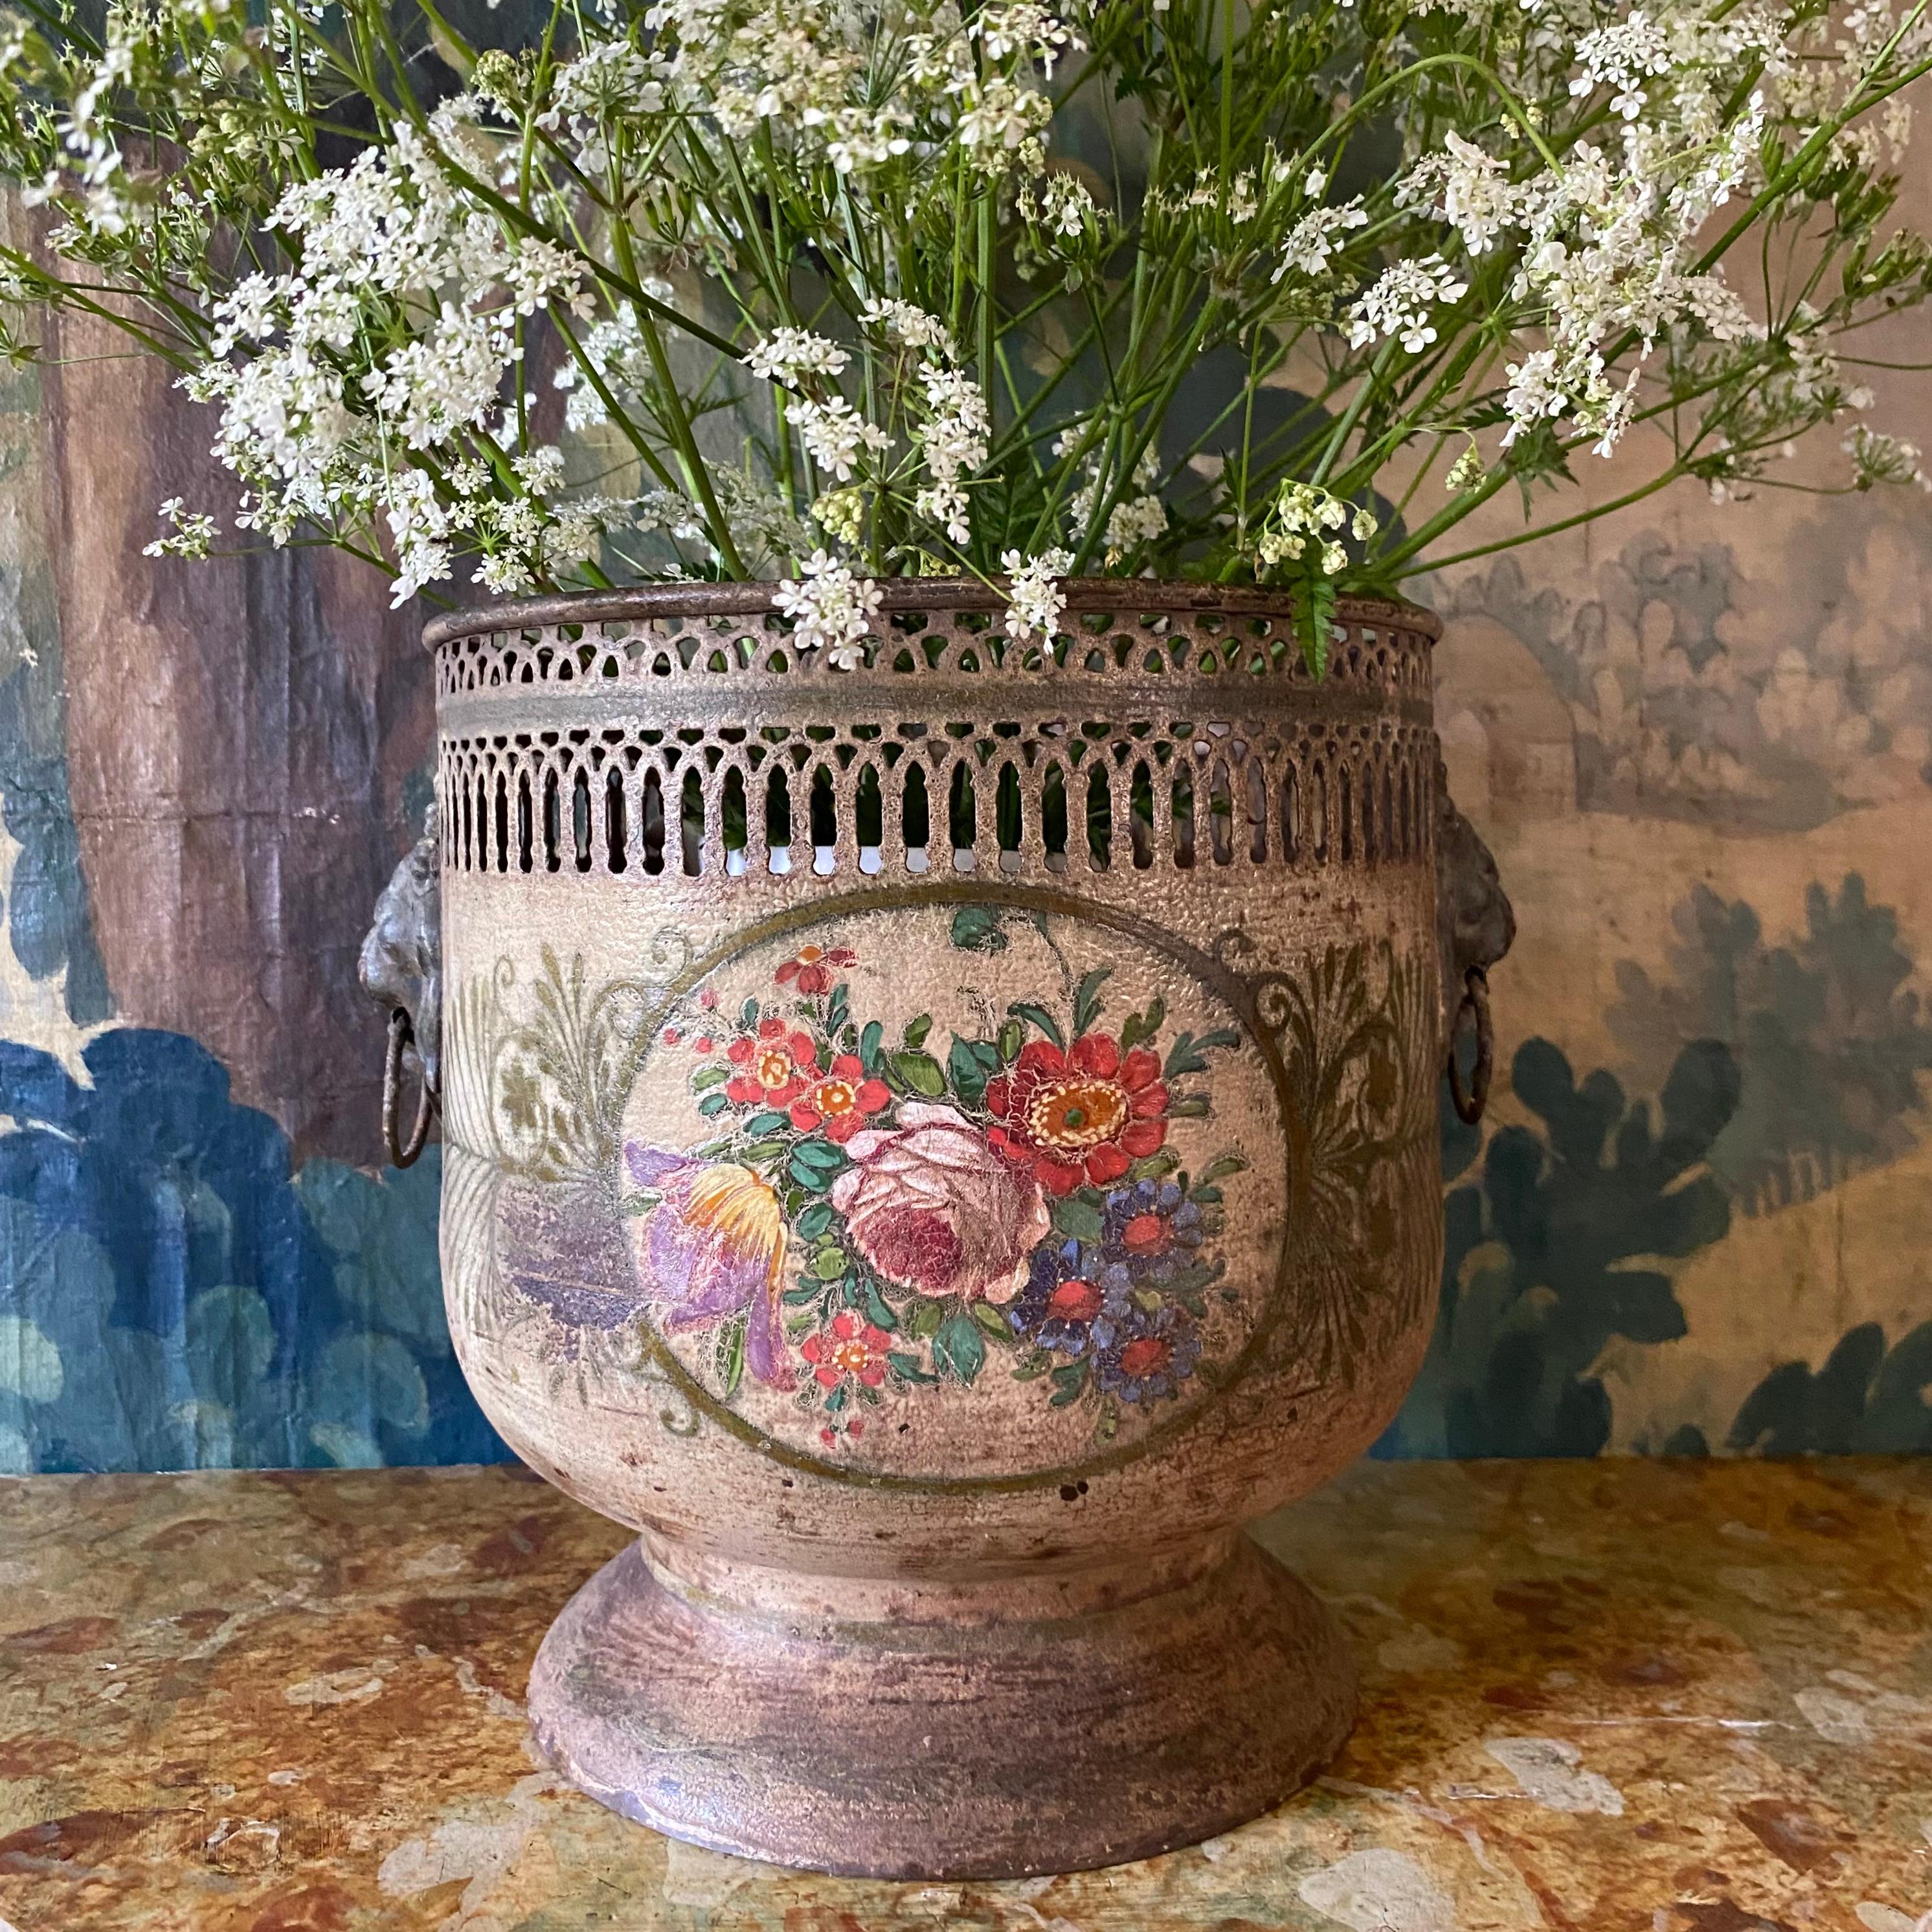 Cache-pot en faïence peint à la main au début du 19e siècle, avec bord supérieur percé, décor floral peint à la main sur les deux côtés et grandes poignées en forme de tête de lion - il s'agit d'une pièce de faïence assez grande, lourde et de bonne